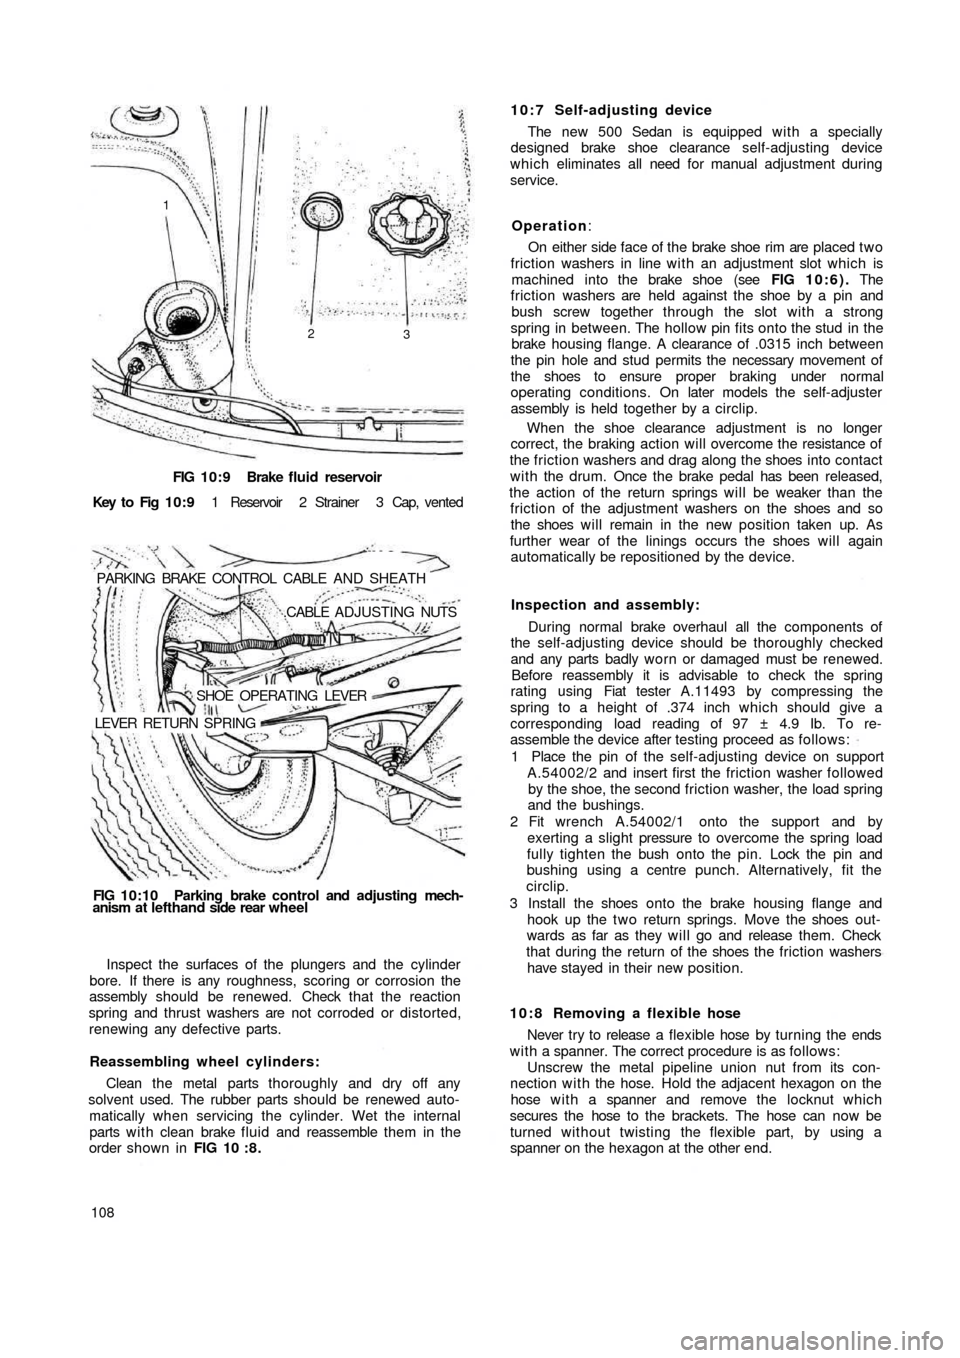 FIAT 500 1958 1.G Workshop Manual FIG 10:9 Brake  fluid reservoir
Key  to  Fig  1 0 : 9 1  Reservoir  2  Strainer  3  Cap,  vented
PARKING  BRAKE  CONTROL  CABLE  AND  SHEATH
.CABLE  ADJUSTING NUTS
SHOE  OPERATING  LEVER
LEVER  RETURN